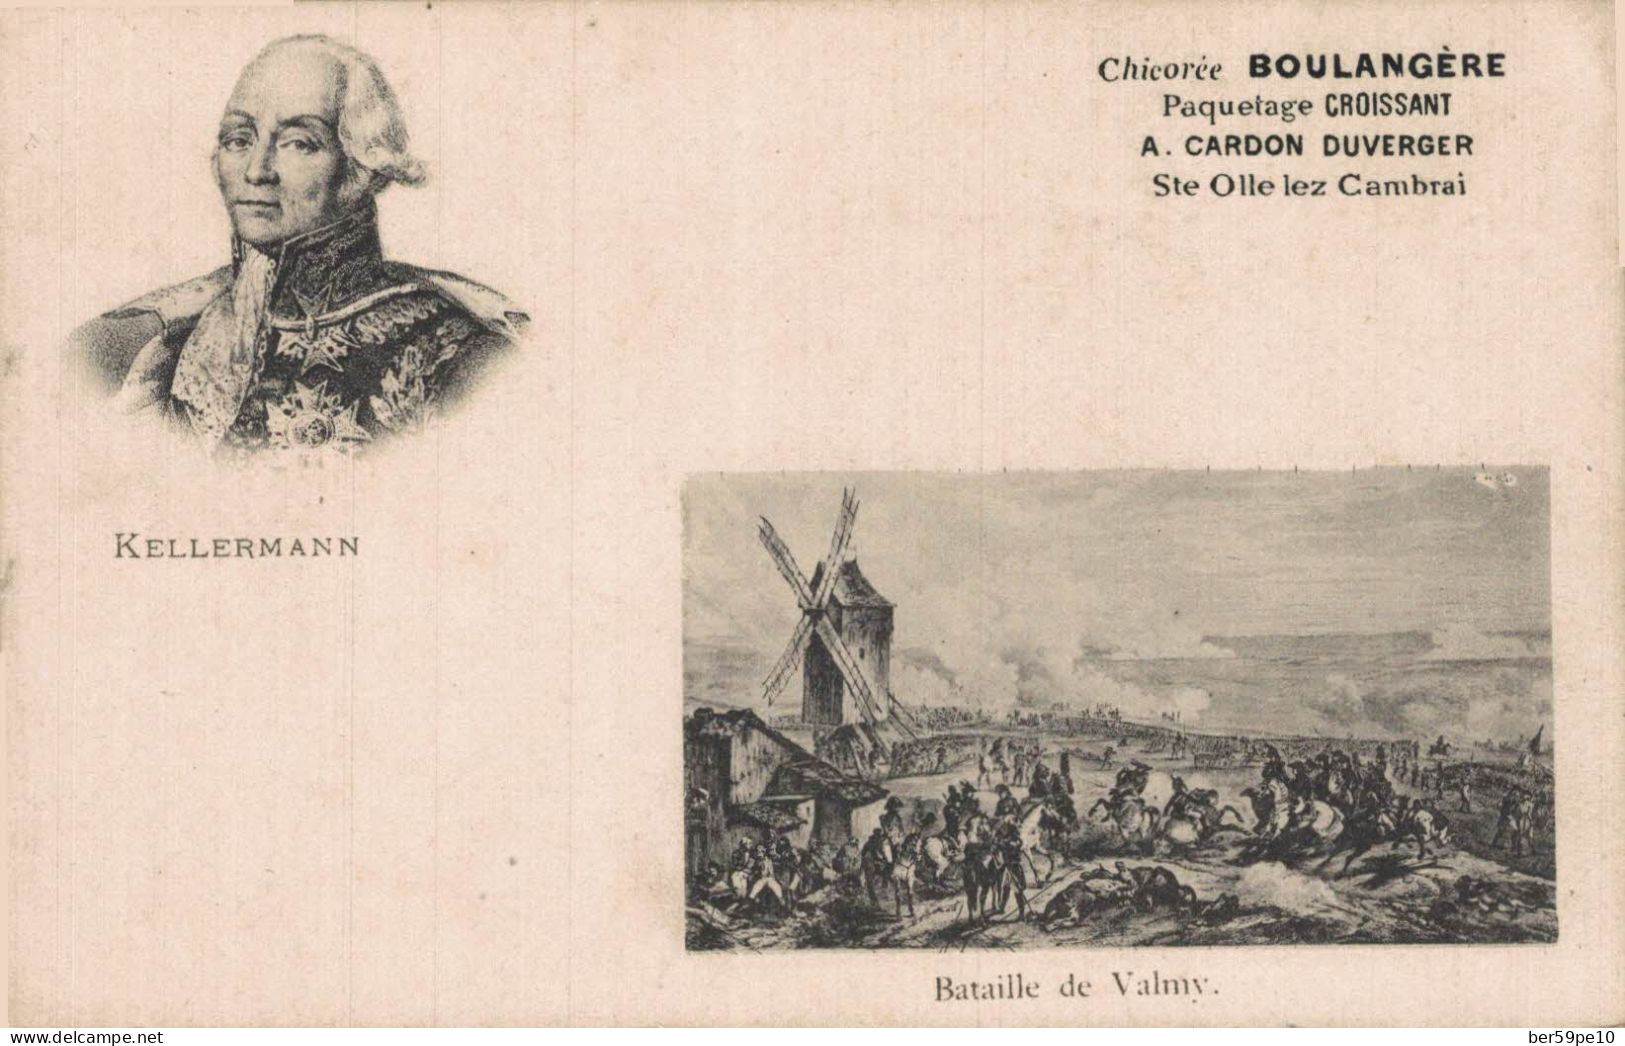 HISTOIRE MEDAILLON DE KELLERMANN BATAILLE DE VALMY PUBLICITE CHICOREE BOULANGERE - History